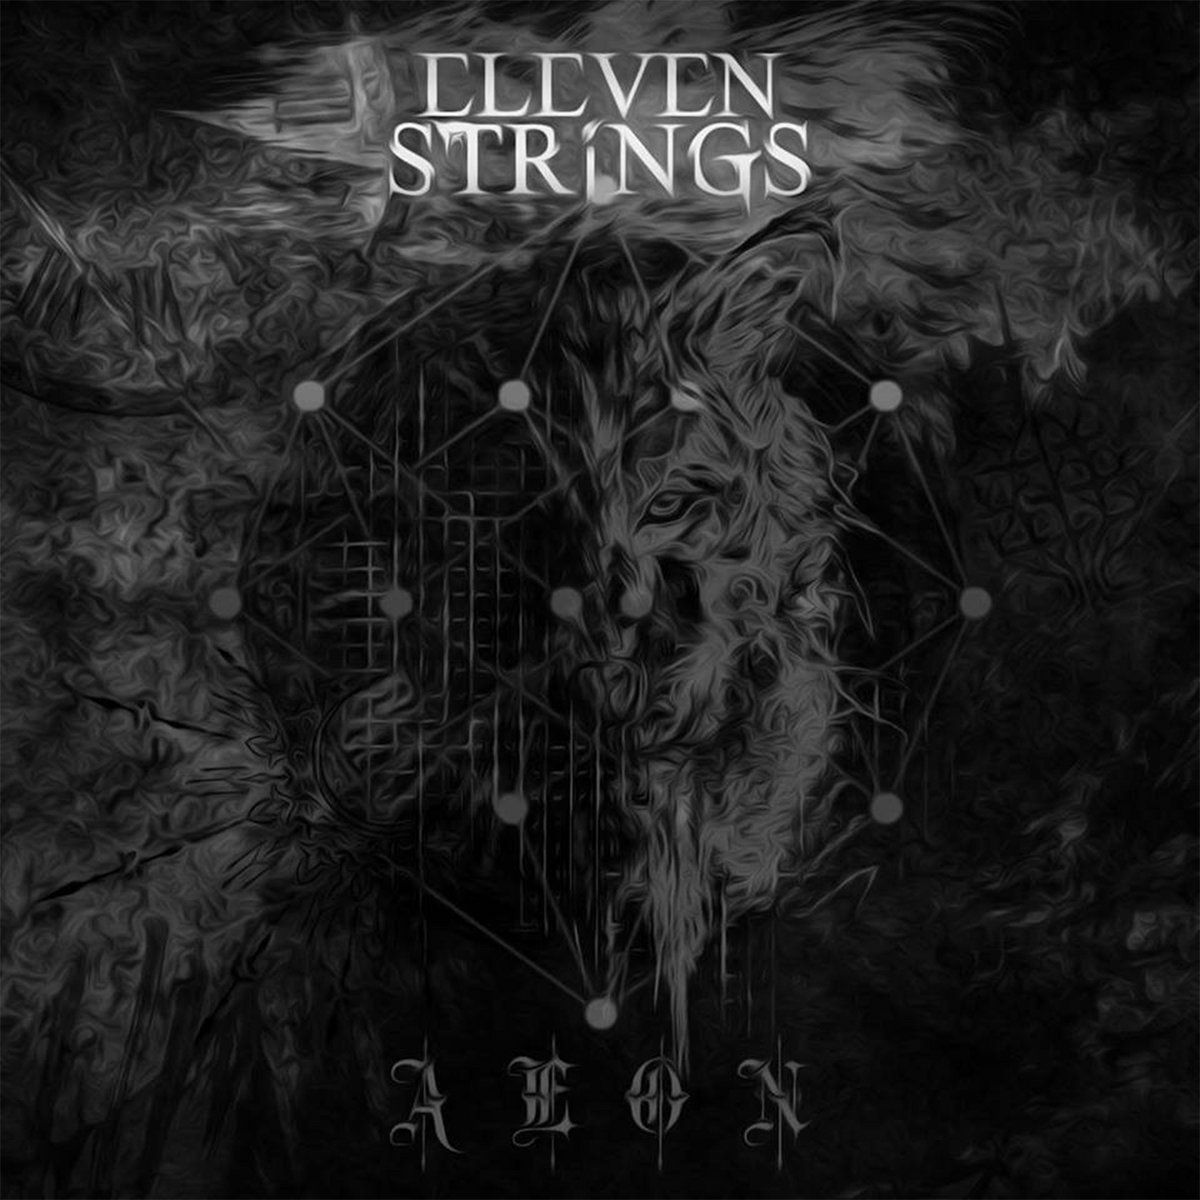 Imagem do álbum AEON do(a) artista Eleven Strings